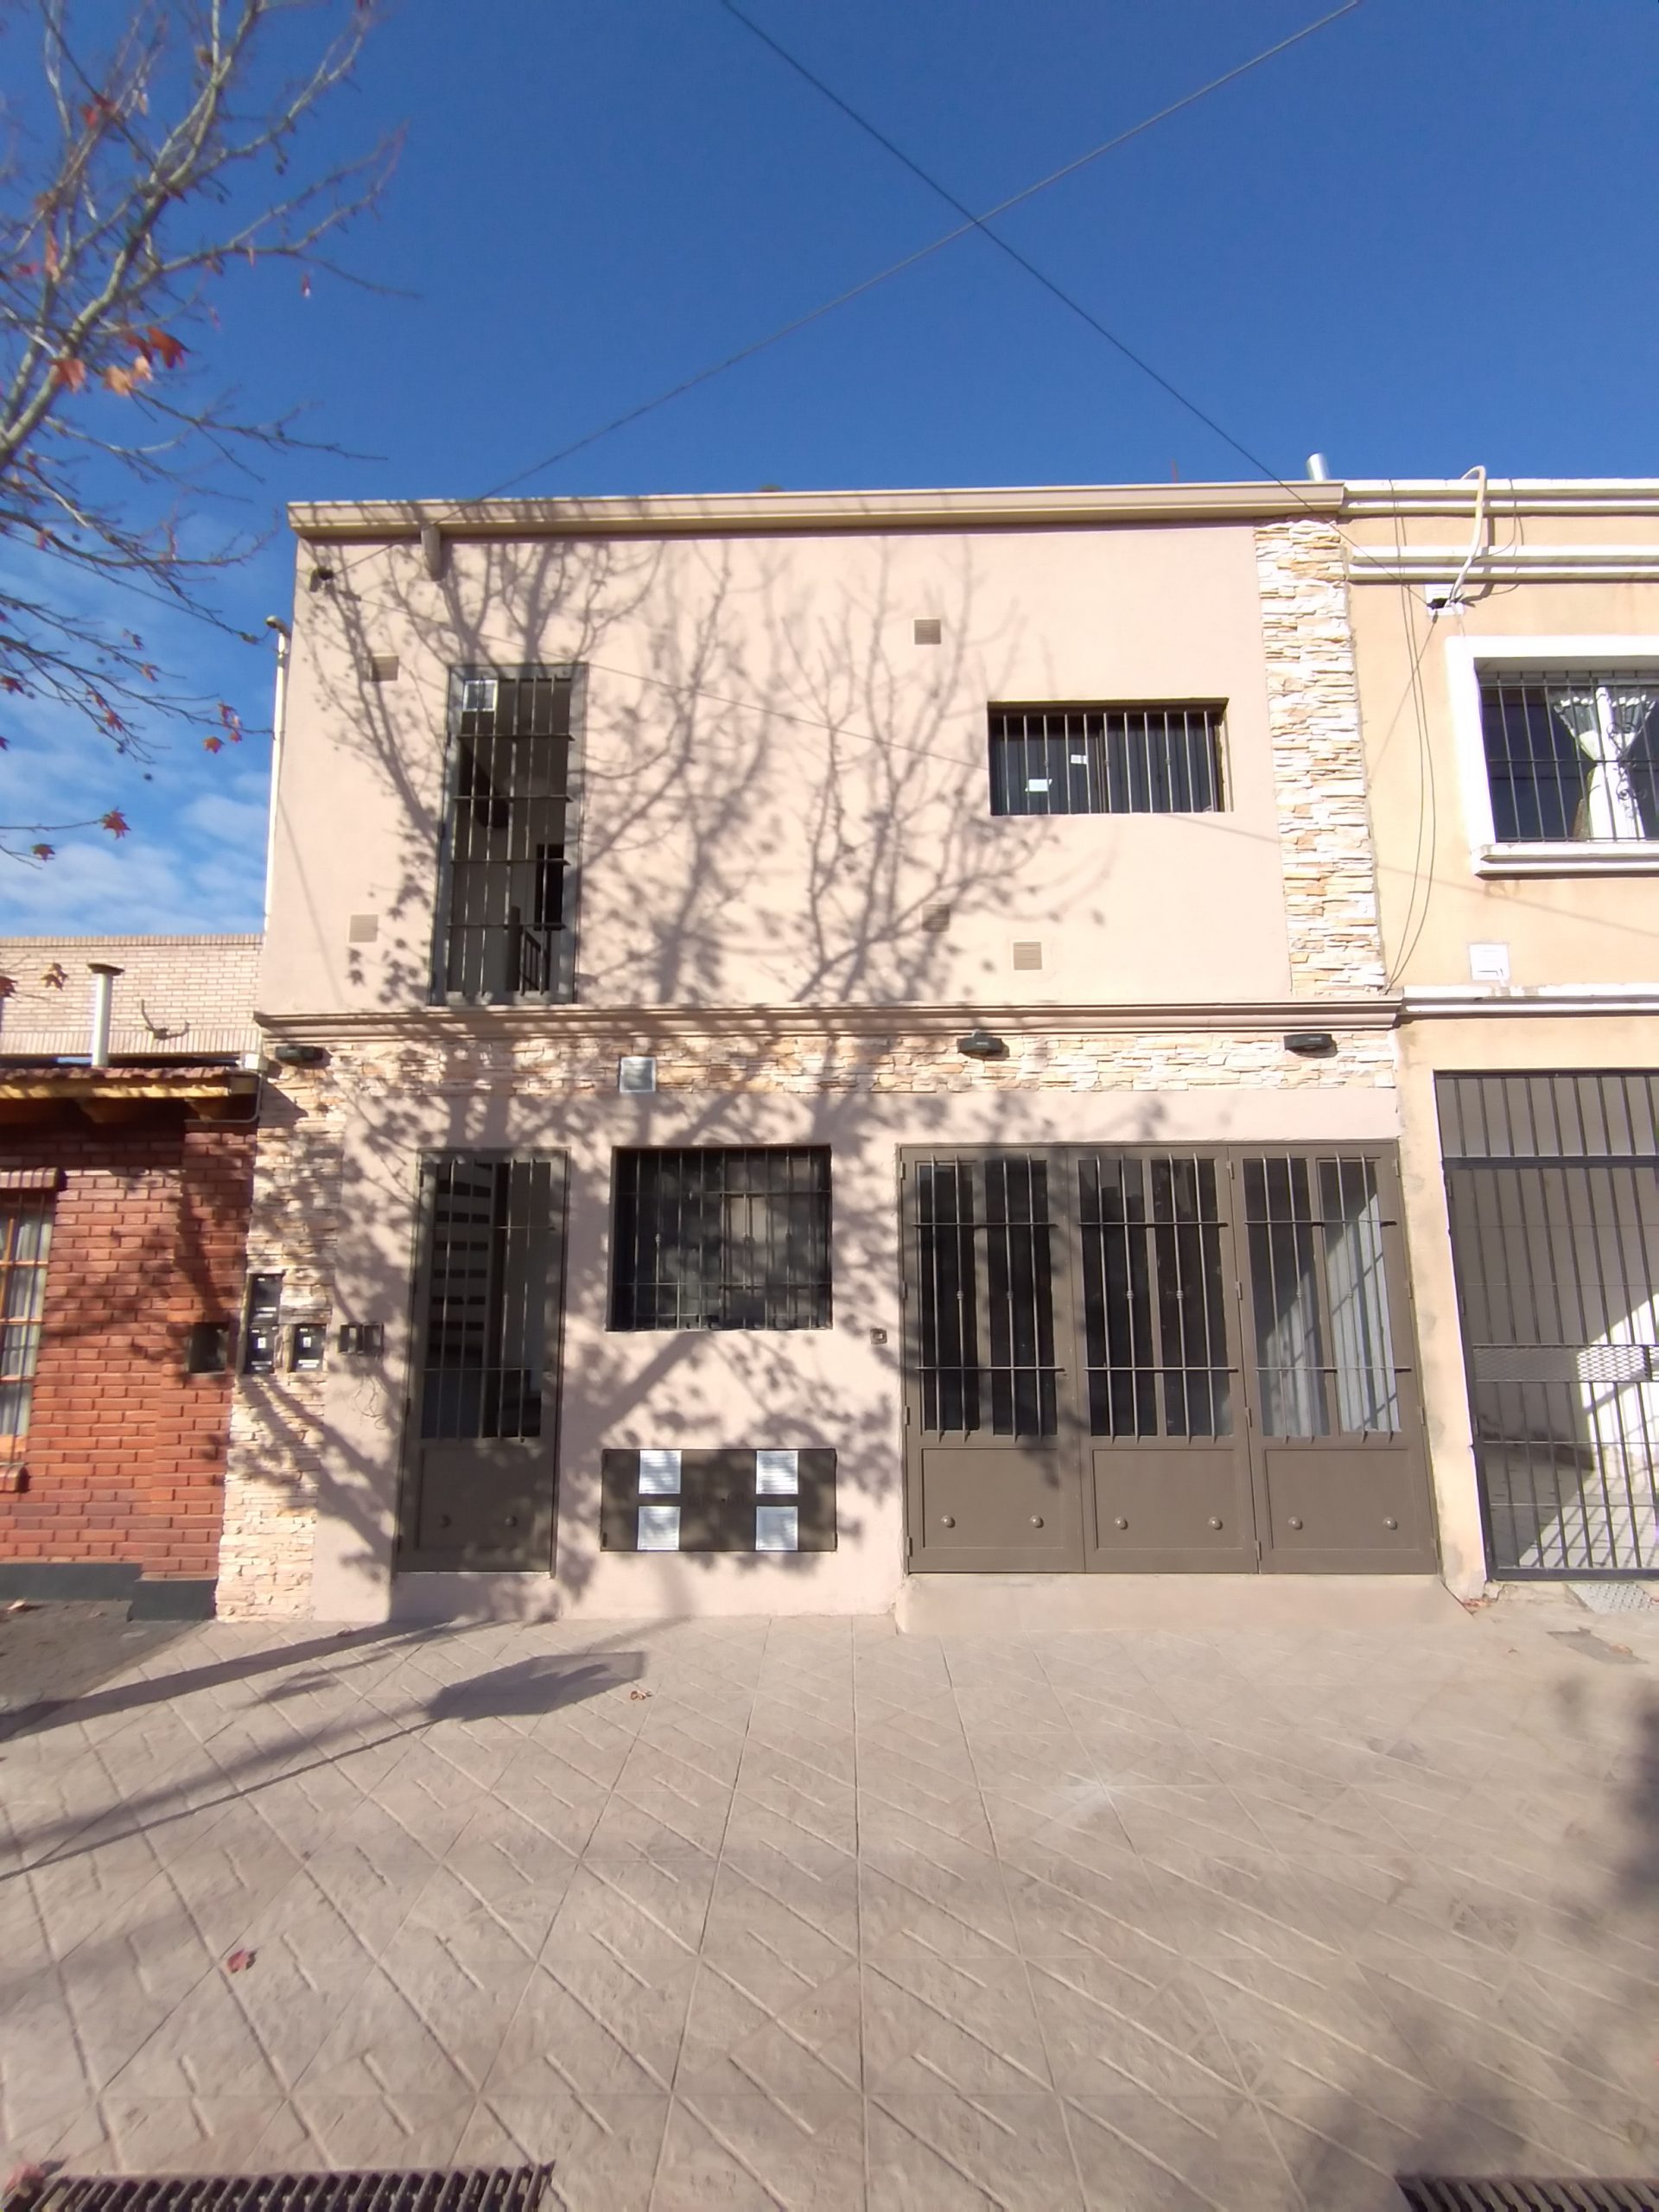 Casa B° Paseo del Norte (Olascoaga y Martín Fierro), Las Heras – 2 Habitaciones – Escritorio – Patio – COCHERA.-